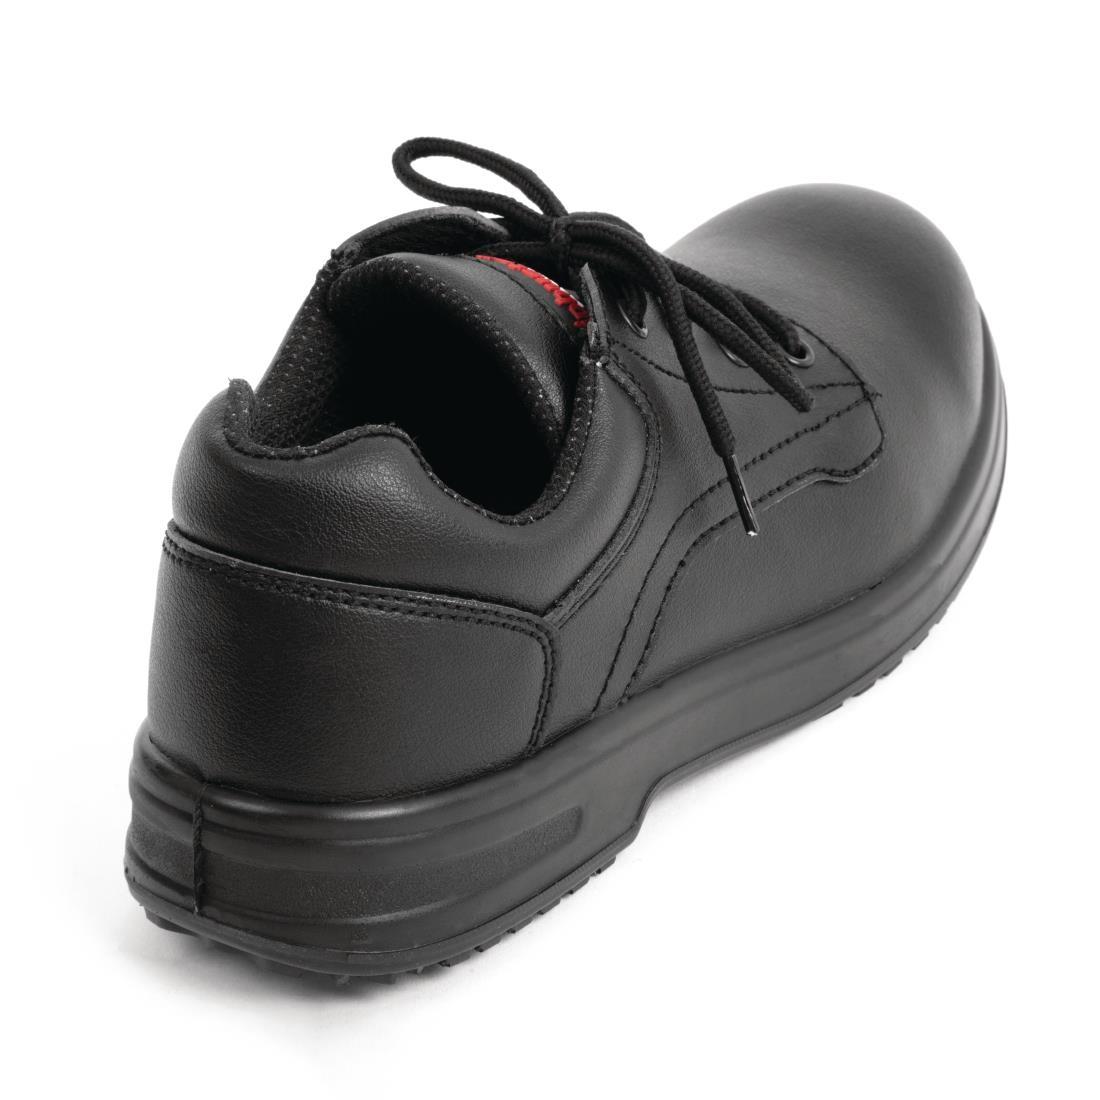 Slipbuster Basic Shoes Slip Resistant Black 43 - BB498-43  - 3